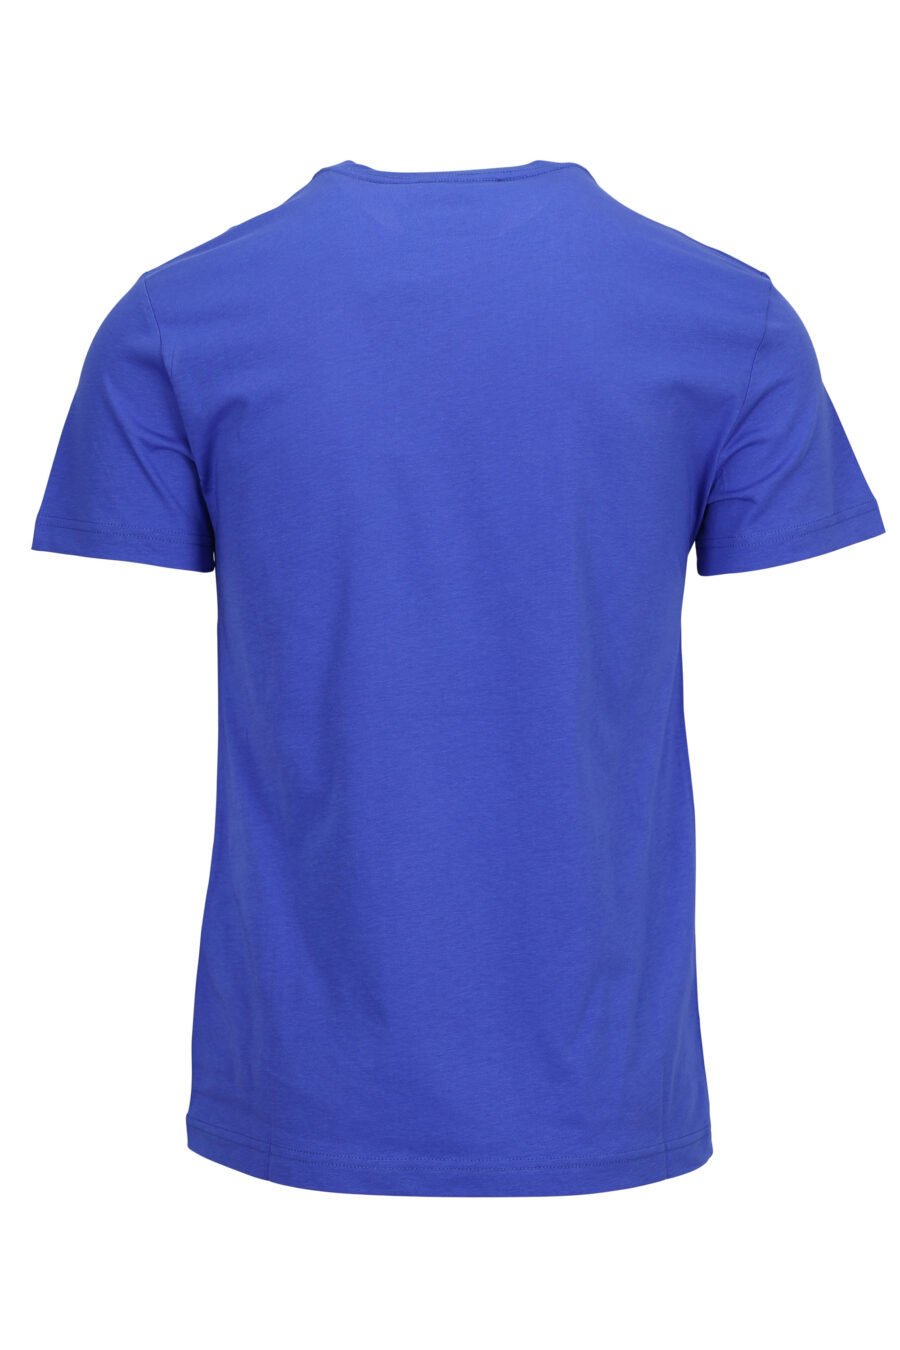 T-shirt bleu avec maxilogue doré brillant - 8052019580044 1